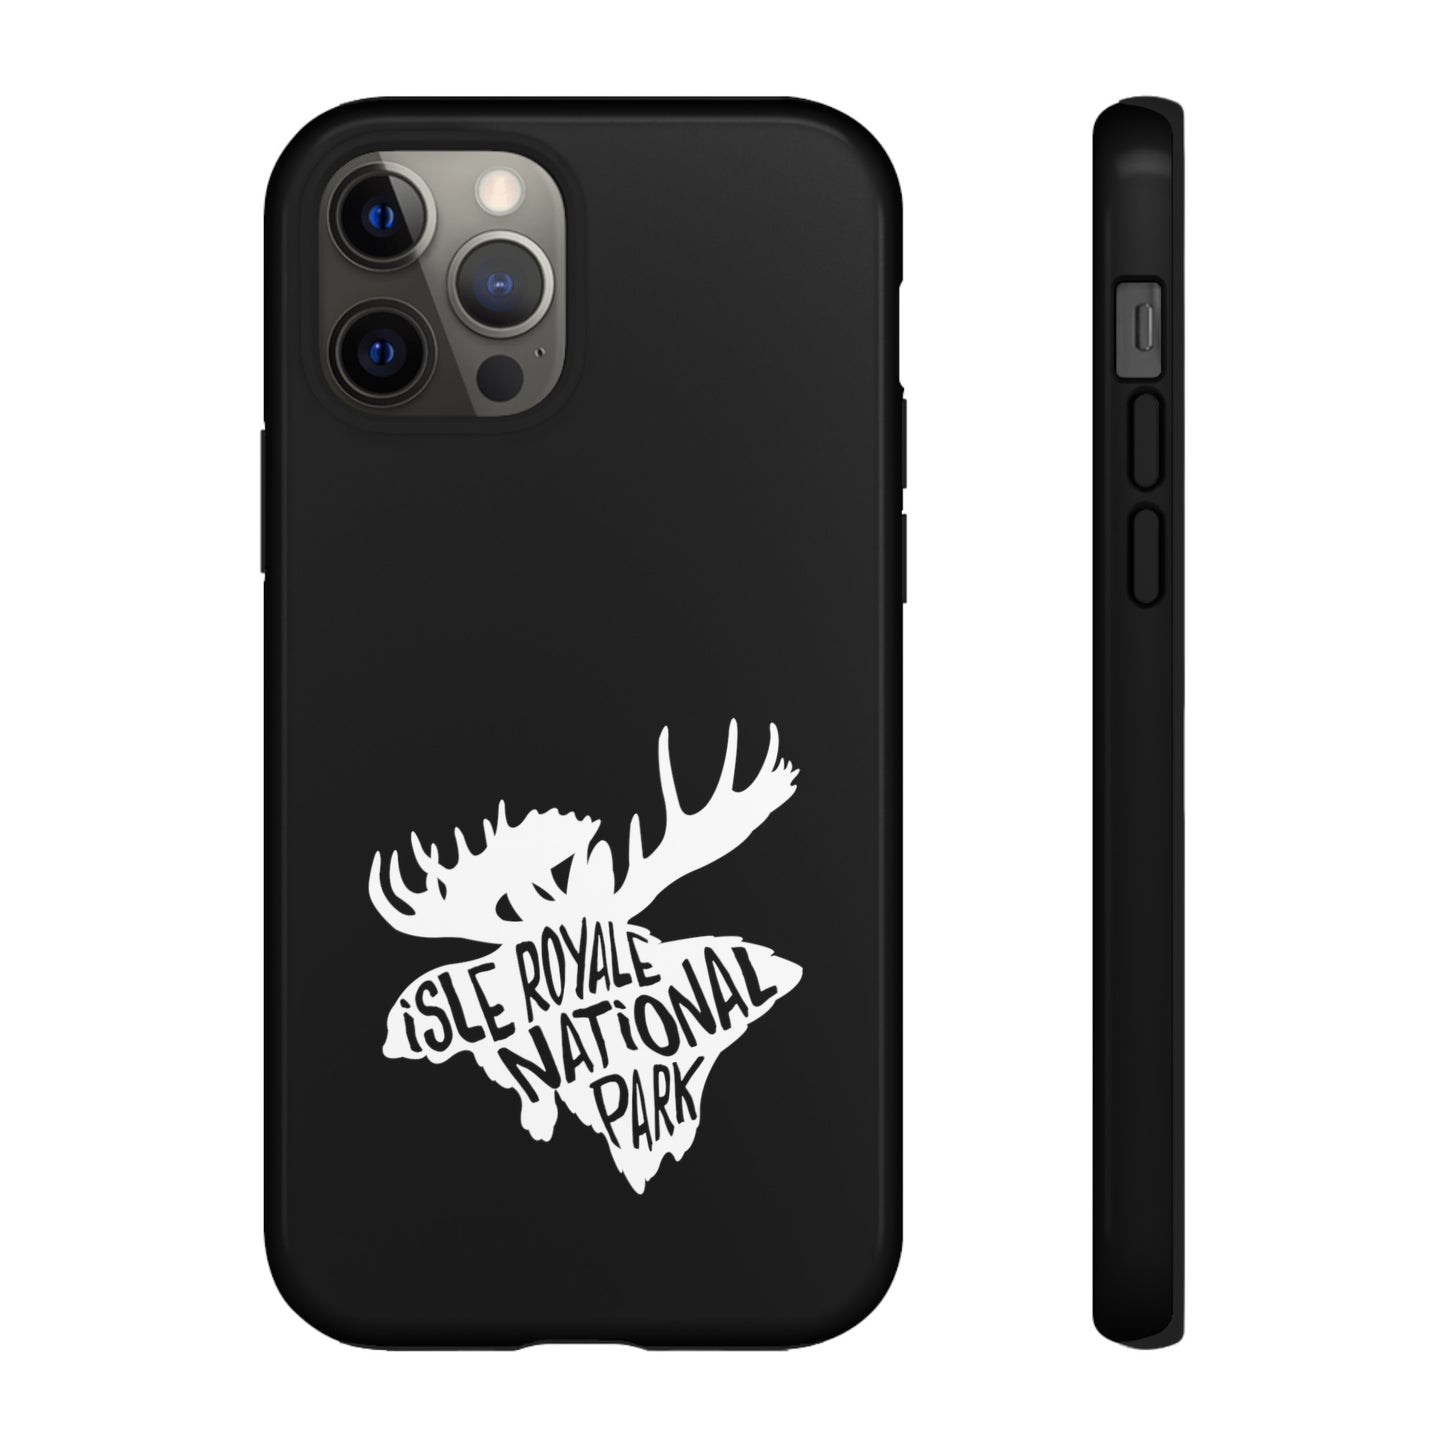 Isle Royale National Park Phone Case - Moose Design